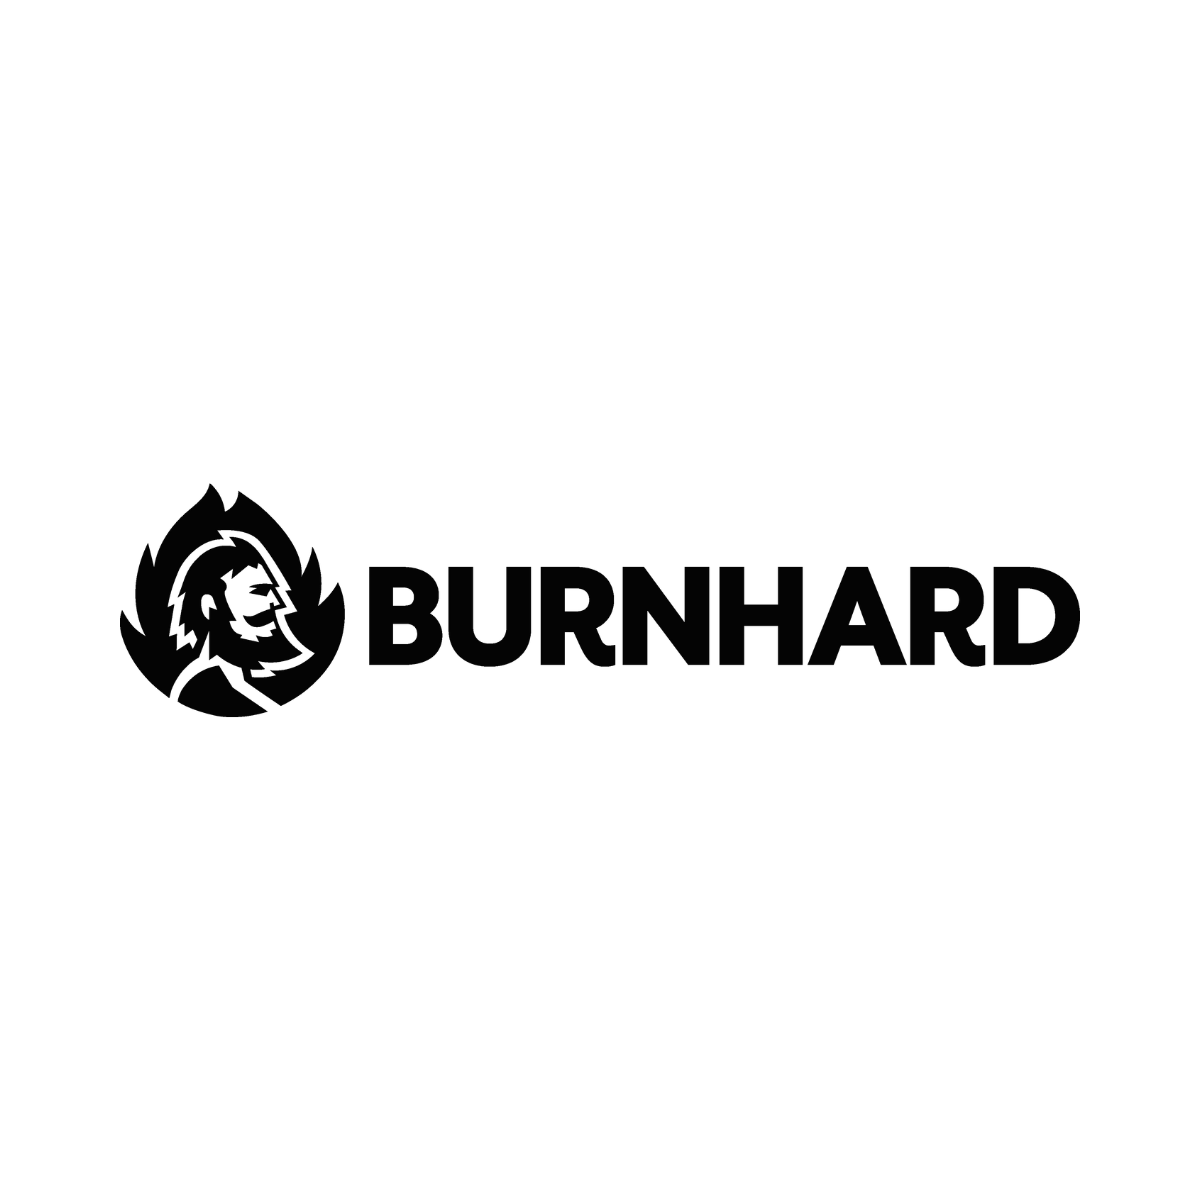 Burnhard logo